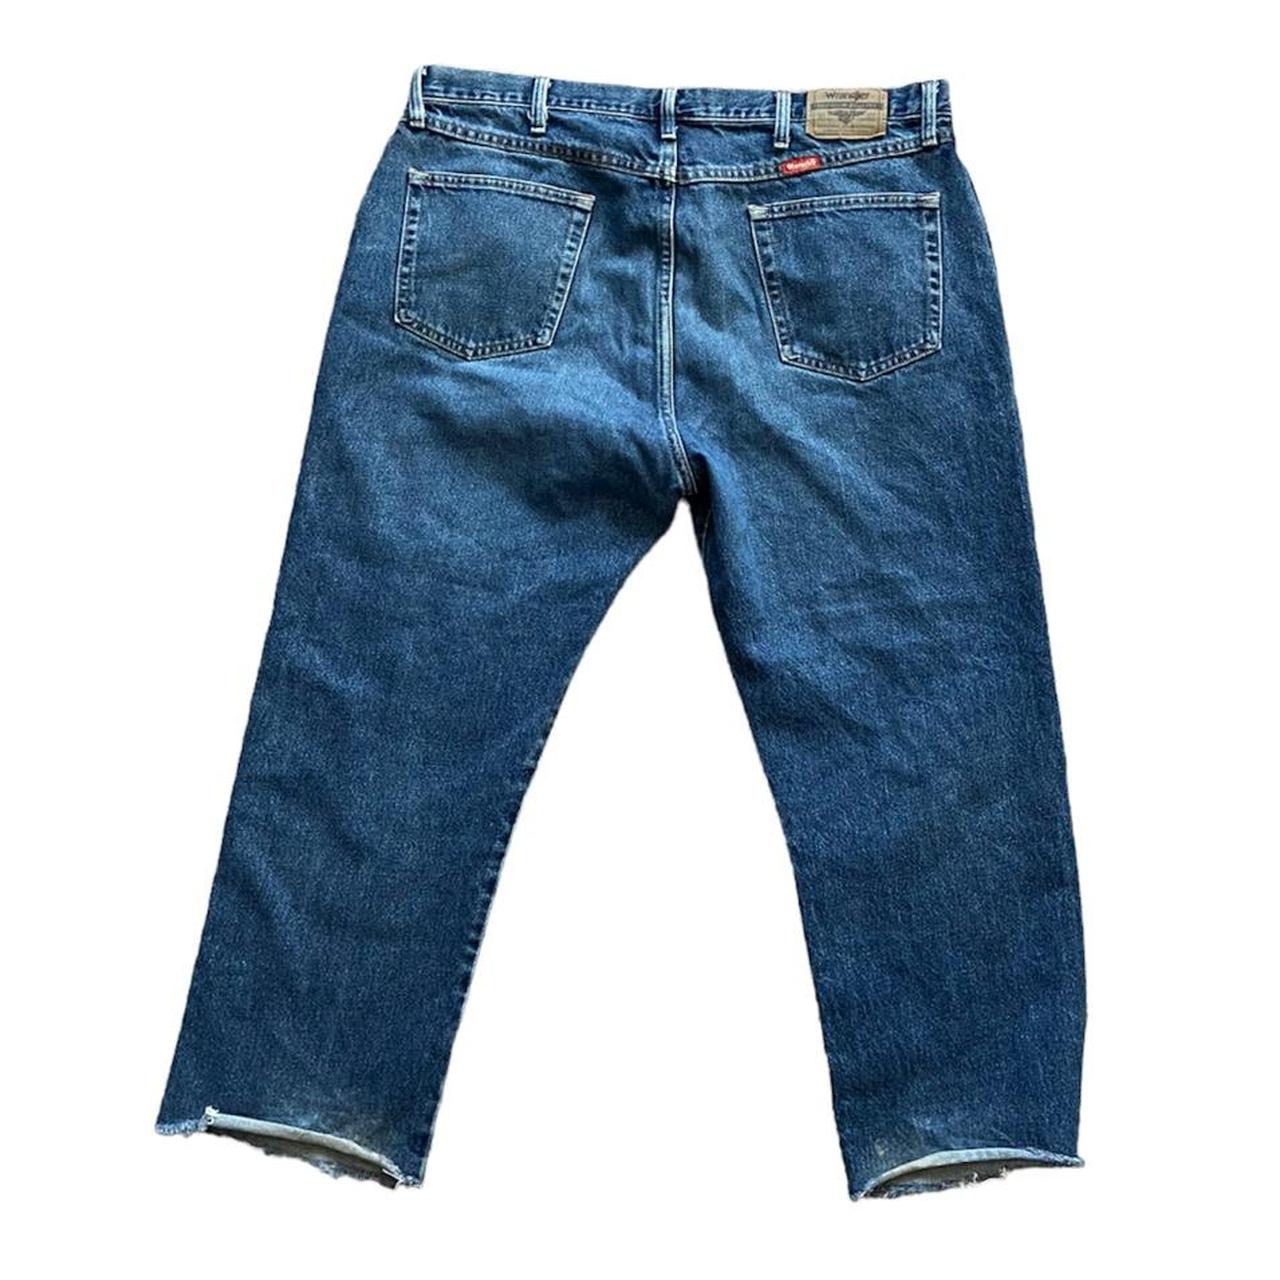 Vintage Wrangler Denim Jeans Vintage Wrangler Blue... - Depop